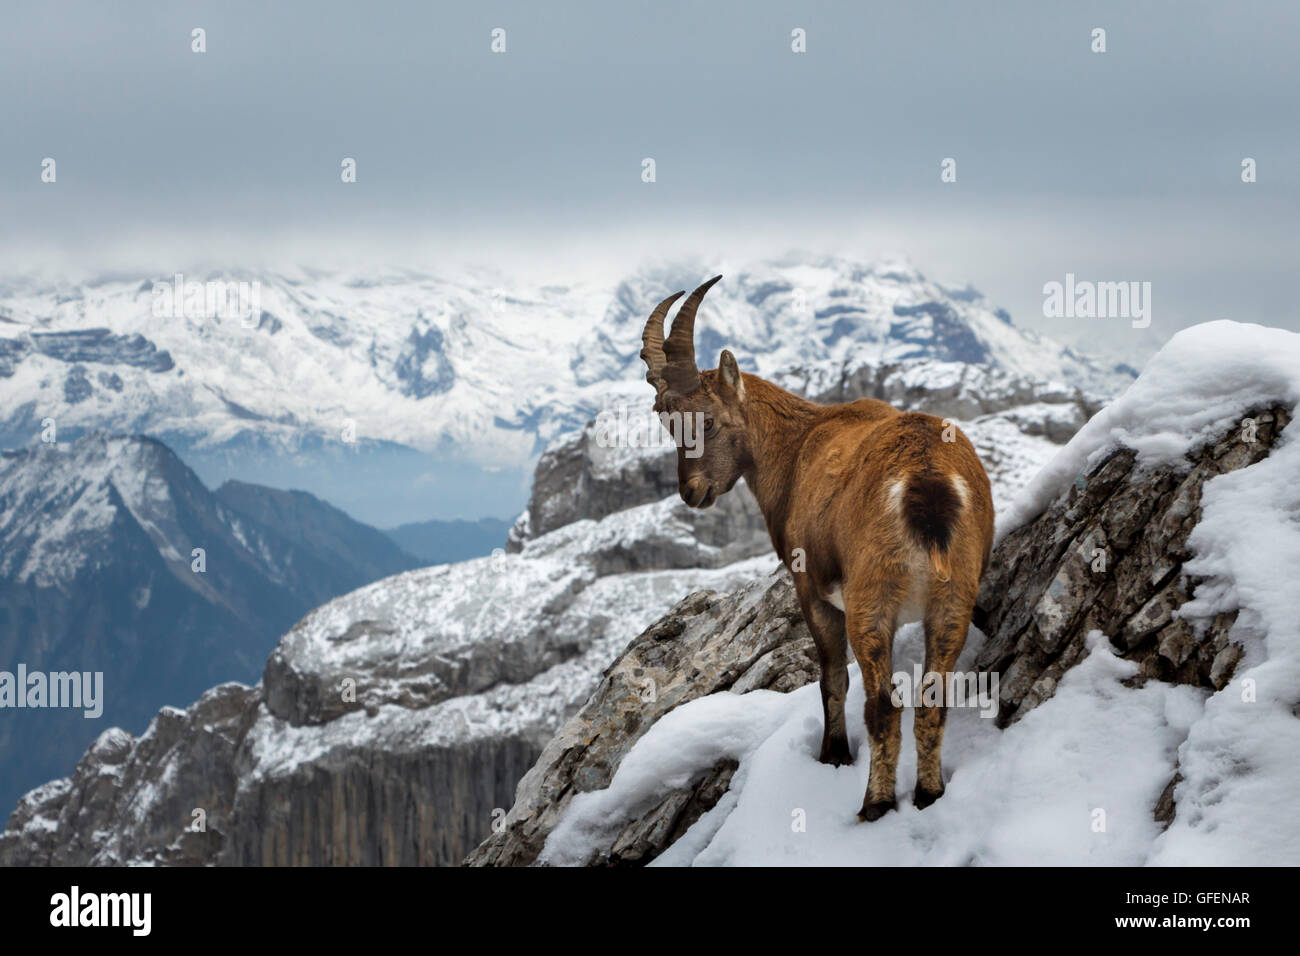 Una montagna selvaggia Capra in piedi sul bordo di una scogliera, con montagne innevate sullo sfondo Foto Stock